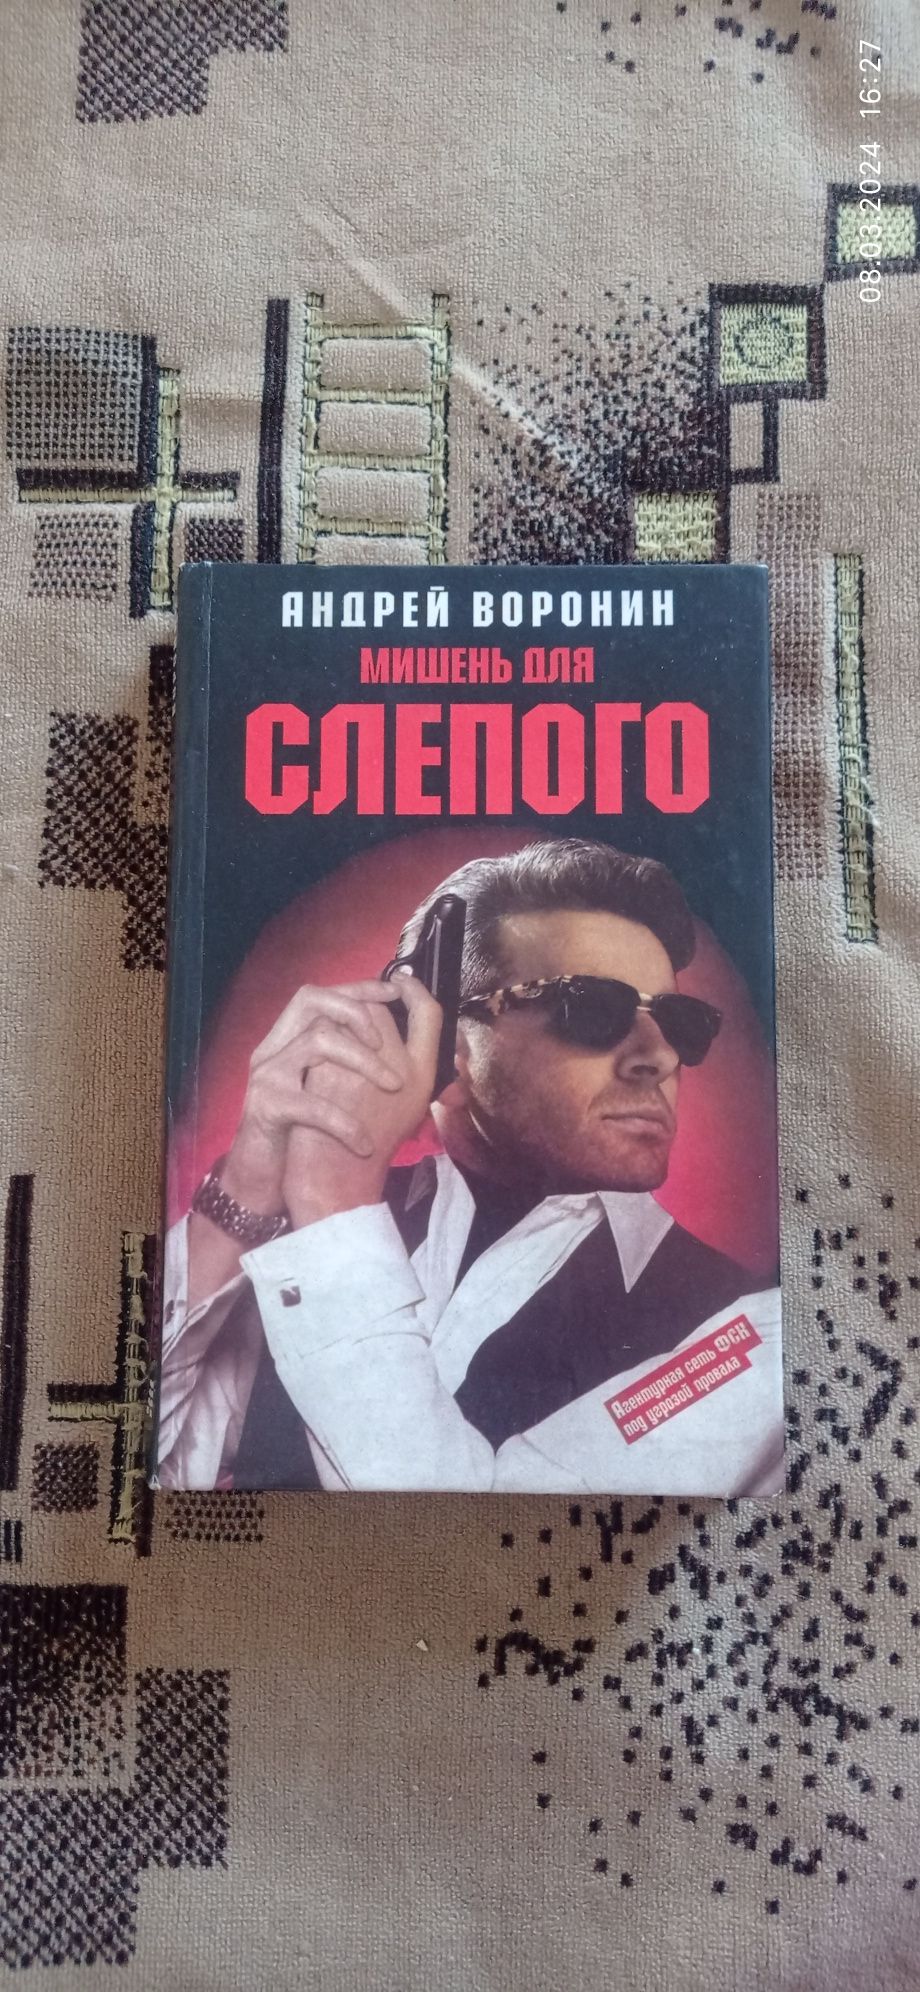 Продам 8 детективных романов Андрея Воронина.